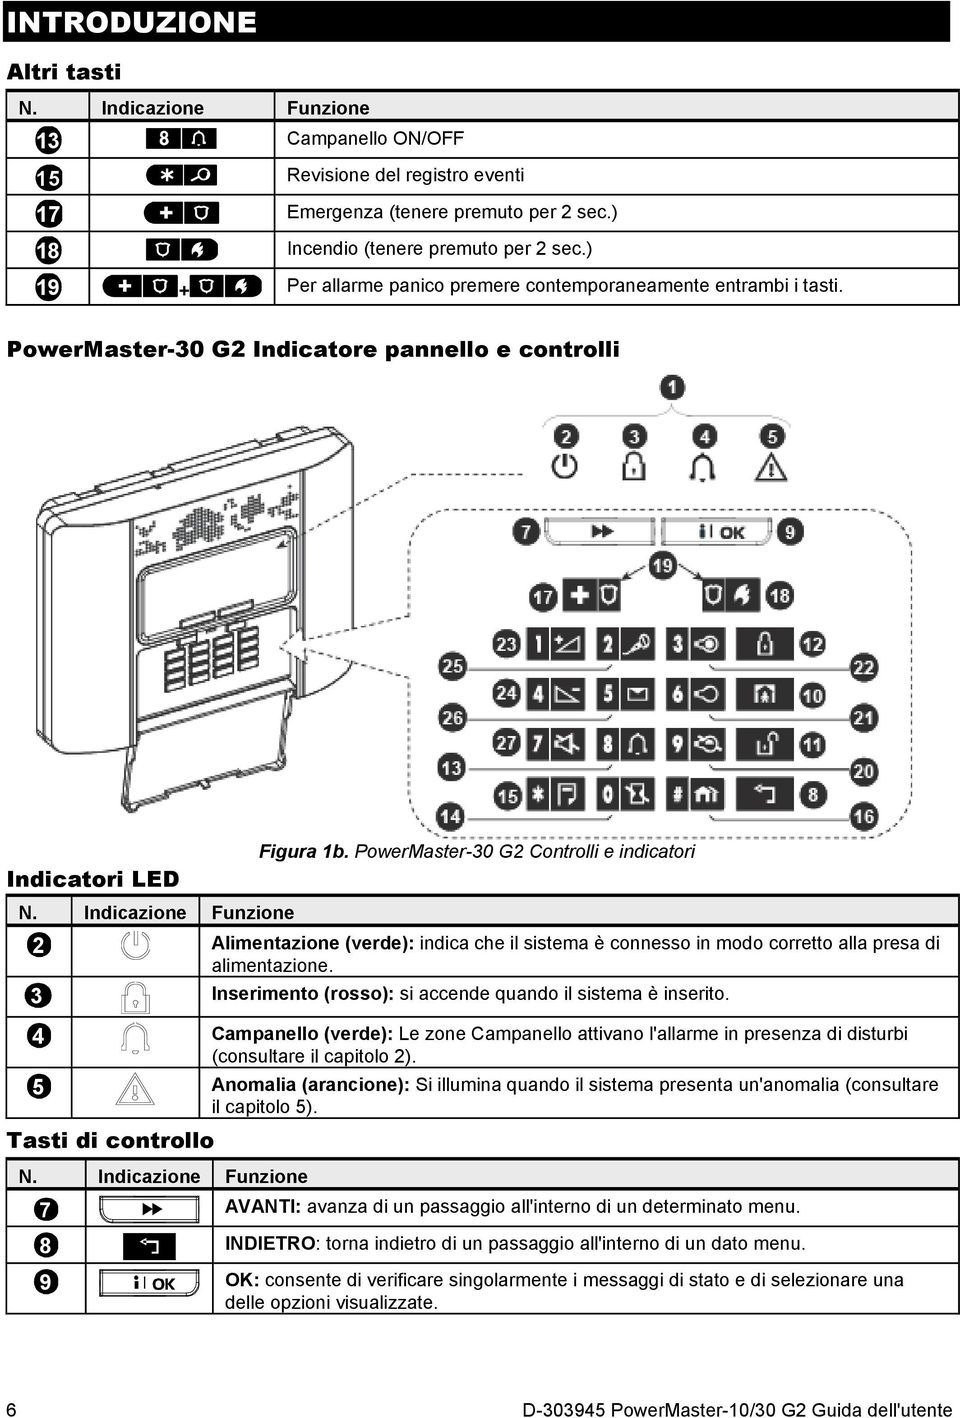 Indicazione Funzione 7 8 9 Figura 1b. PowerMaster-30 G2 Controlli e indicatori Alimentazione (verde): indica che il sistema è connesso in modo corretto alla presa di alimentazione.